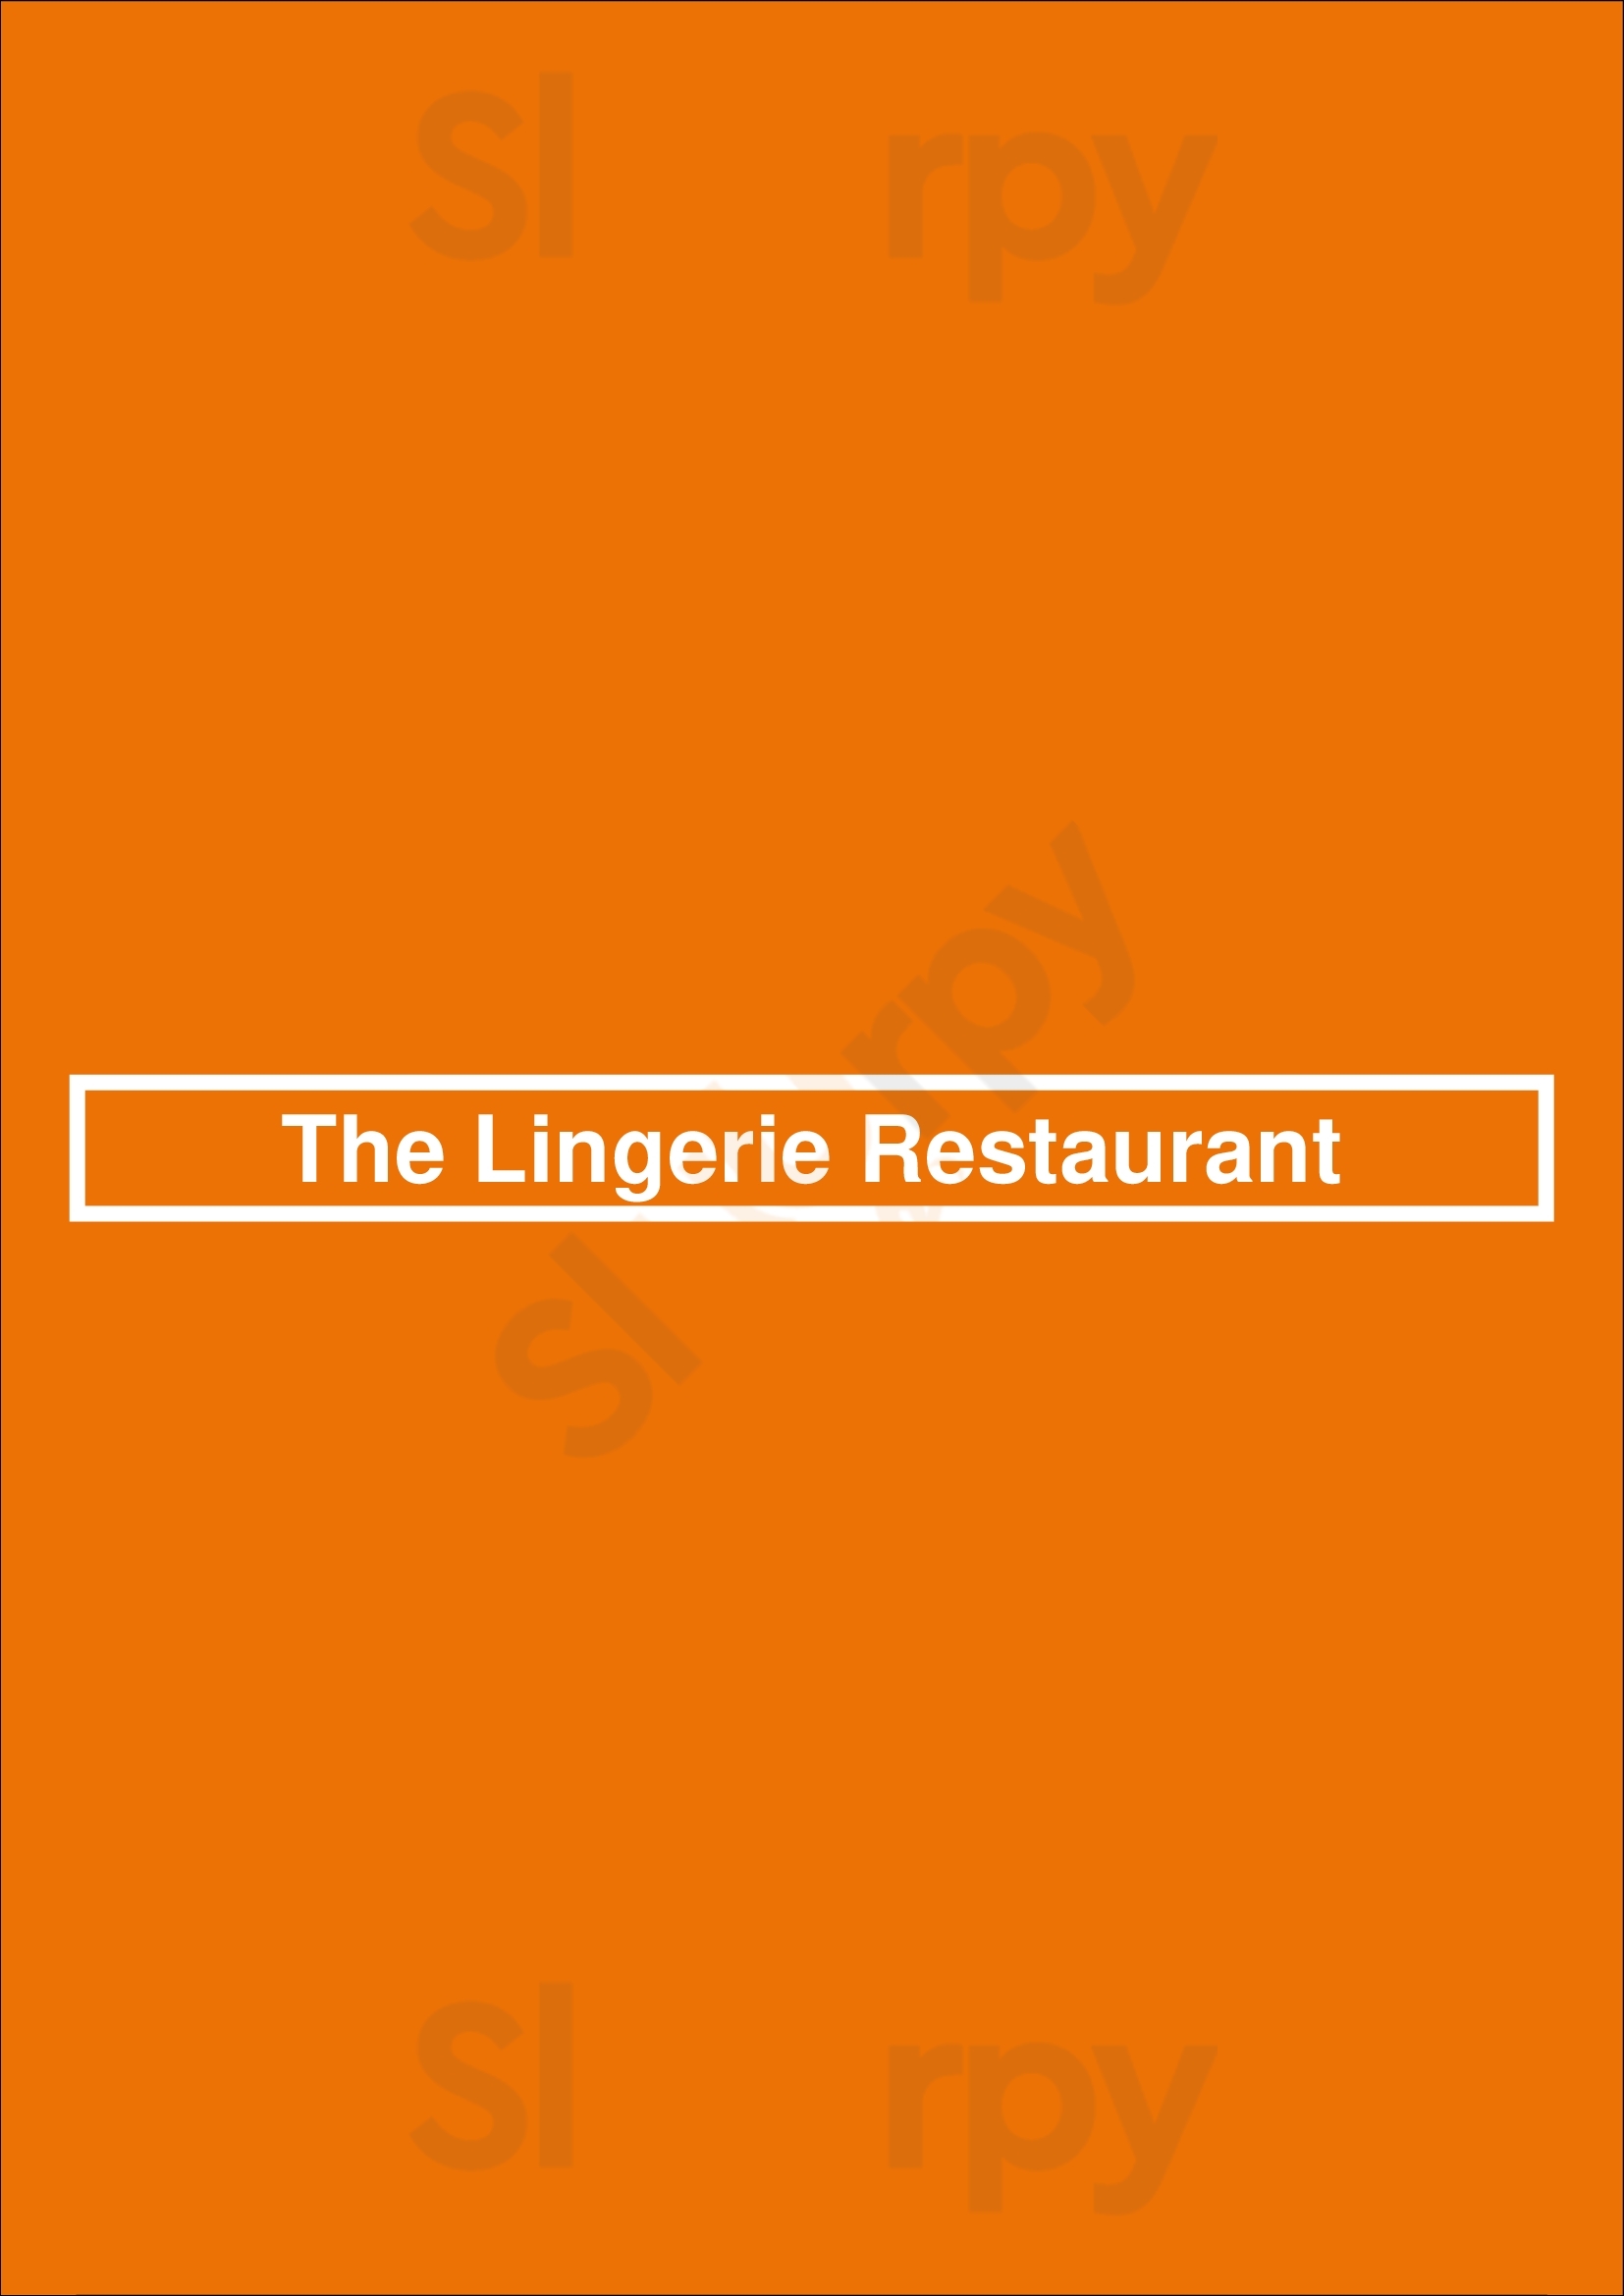 The Lingerie Restaurant Porto Menu - 1